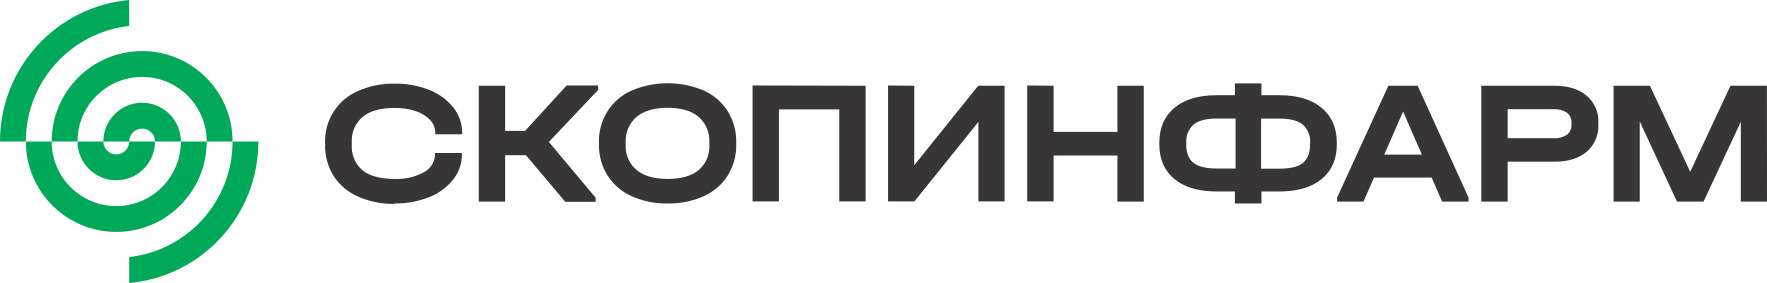 Скопин_logo-ru.jpg